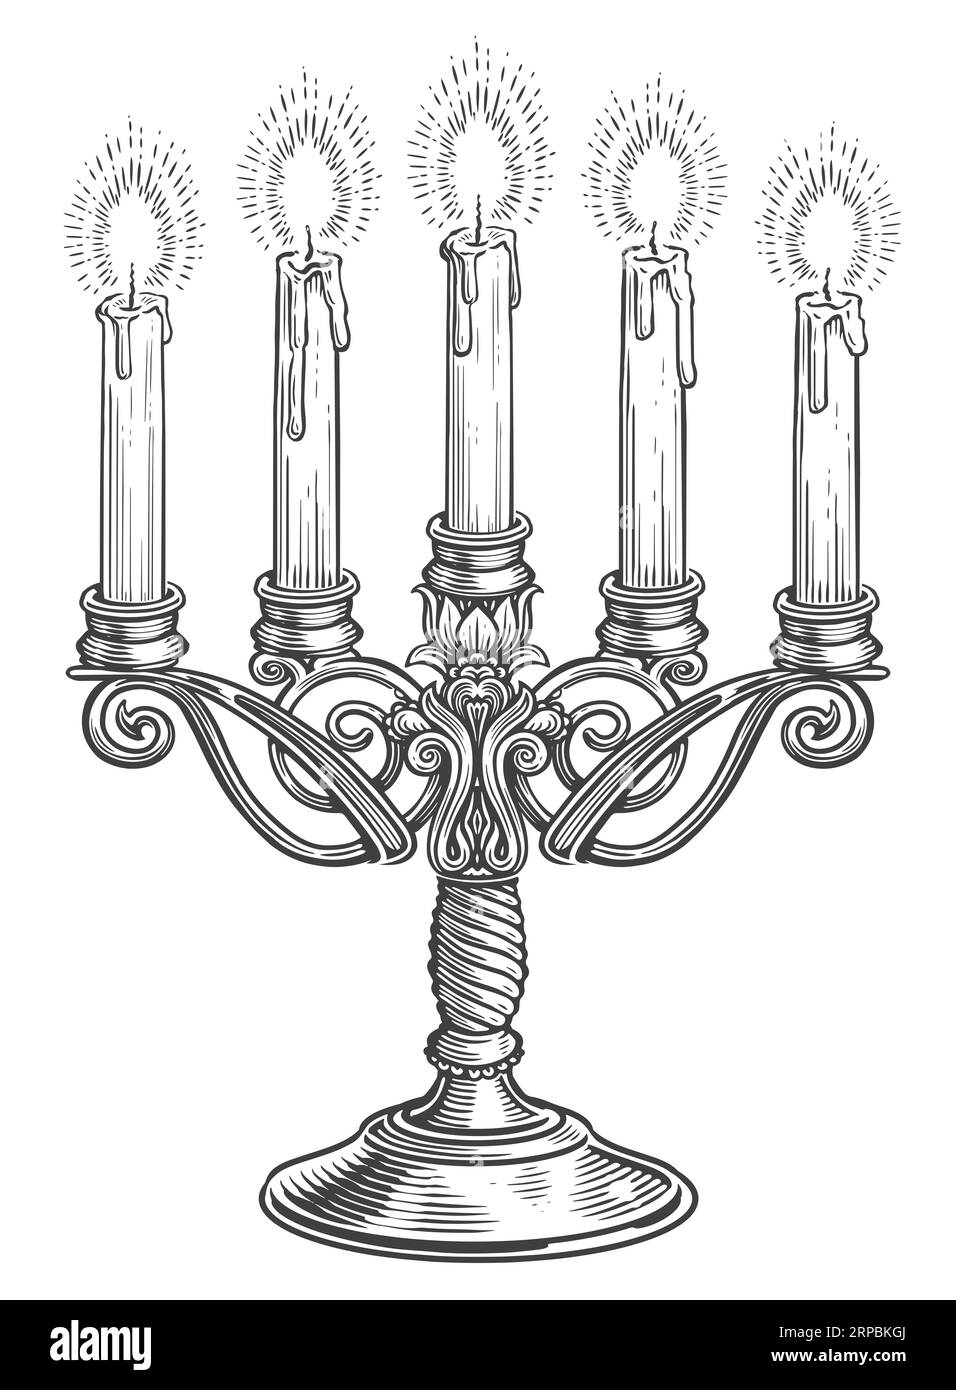 Candelabro d'epoca con cinque candele a fuoco in stile incisione. Illustrazione del candelabro disegnato a mano Foto Stock